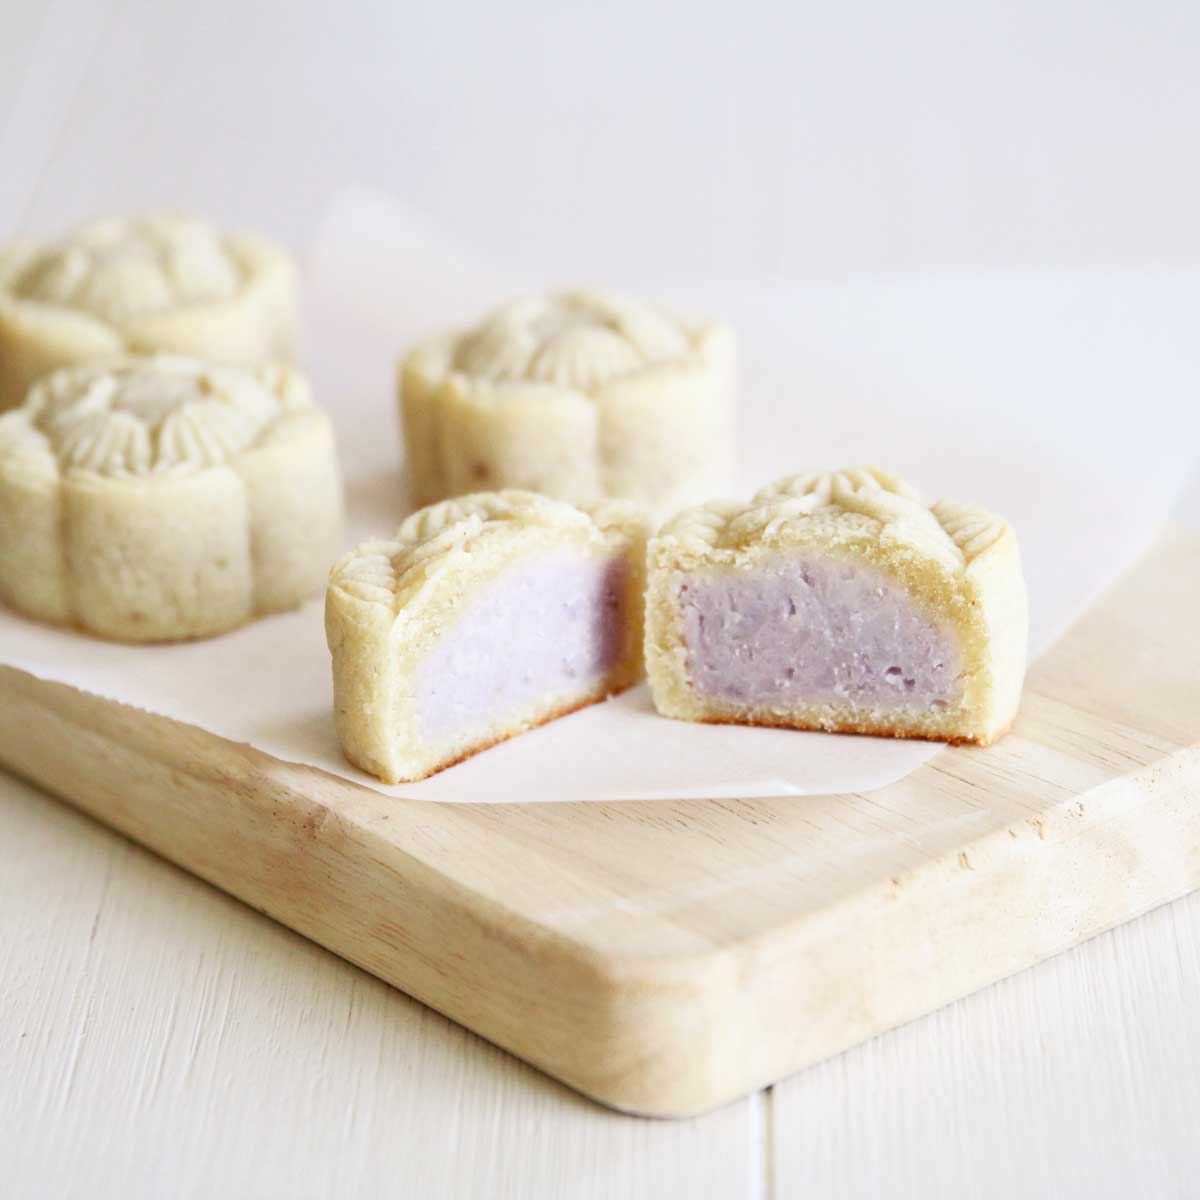 Almond Flour Taro Mooncakes (Vegan & Gluten Free) - Red Bean Mochi Cake